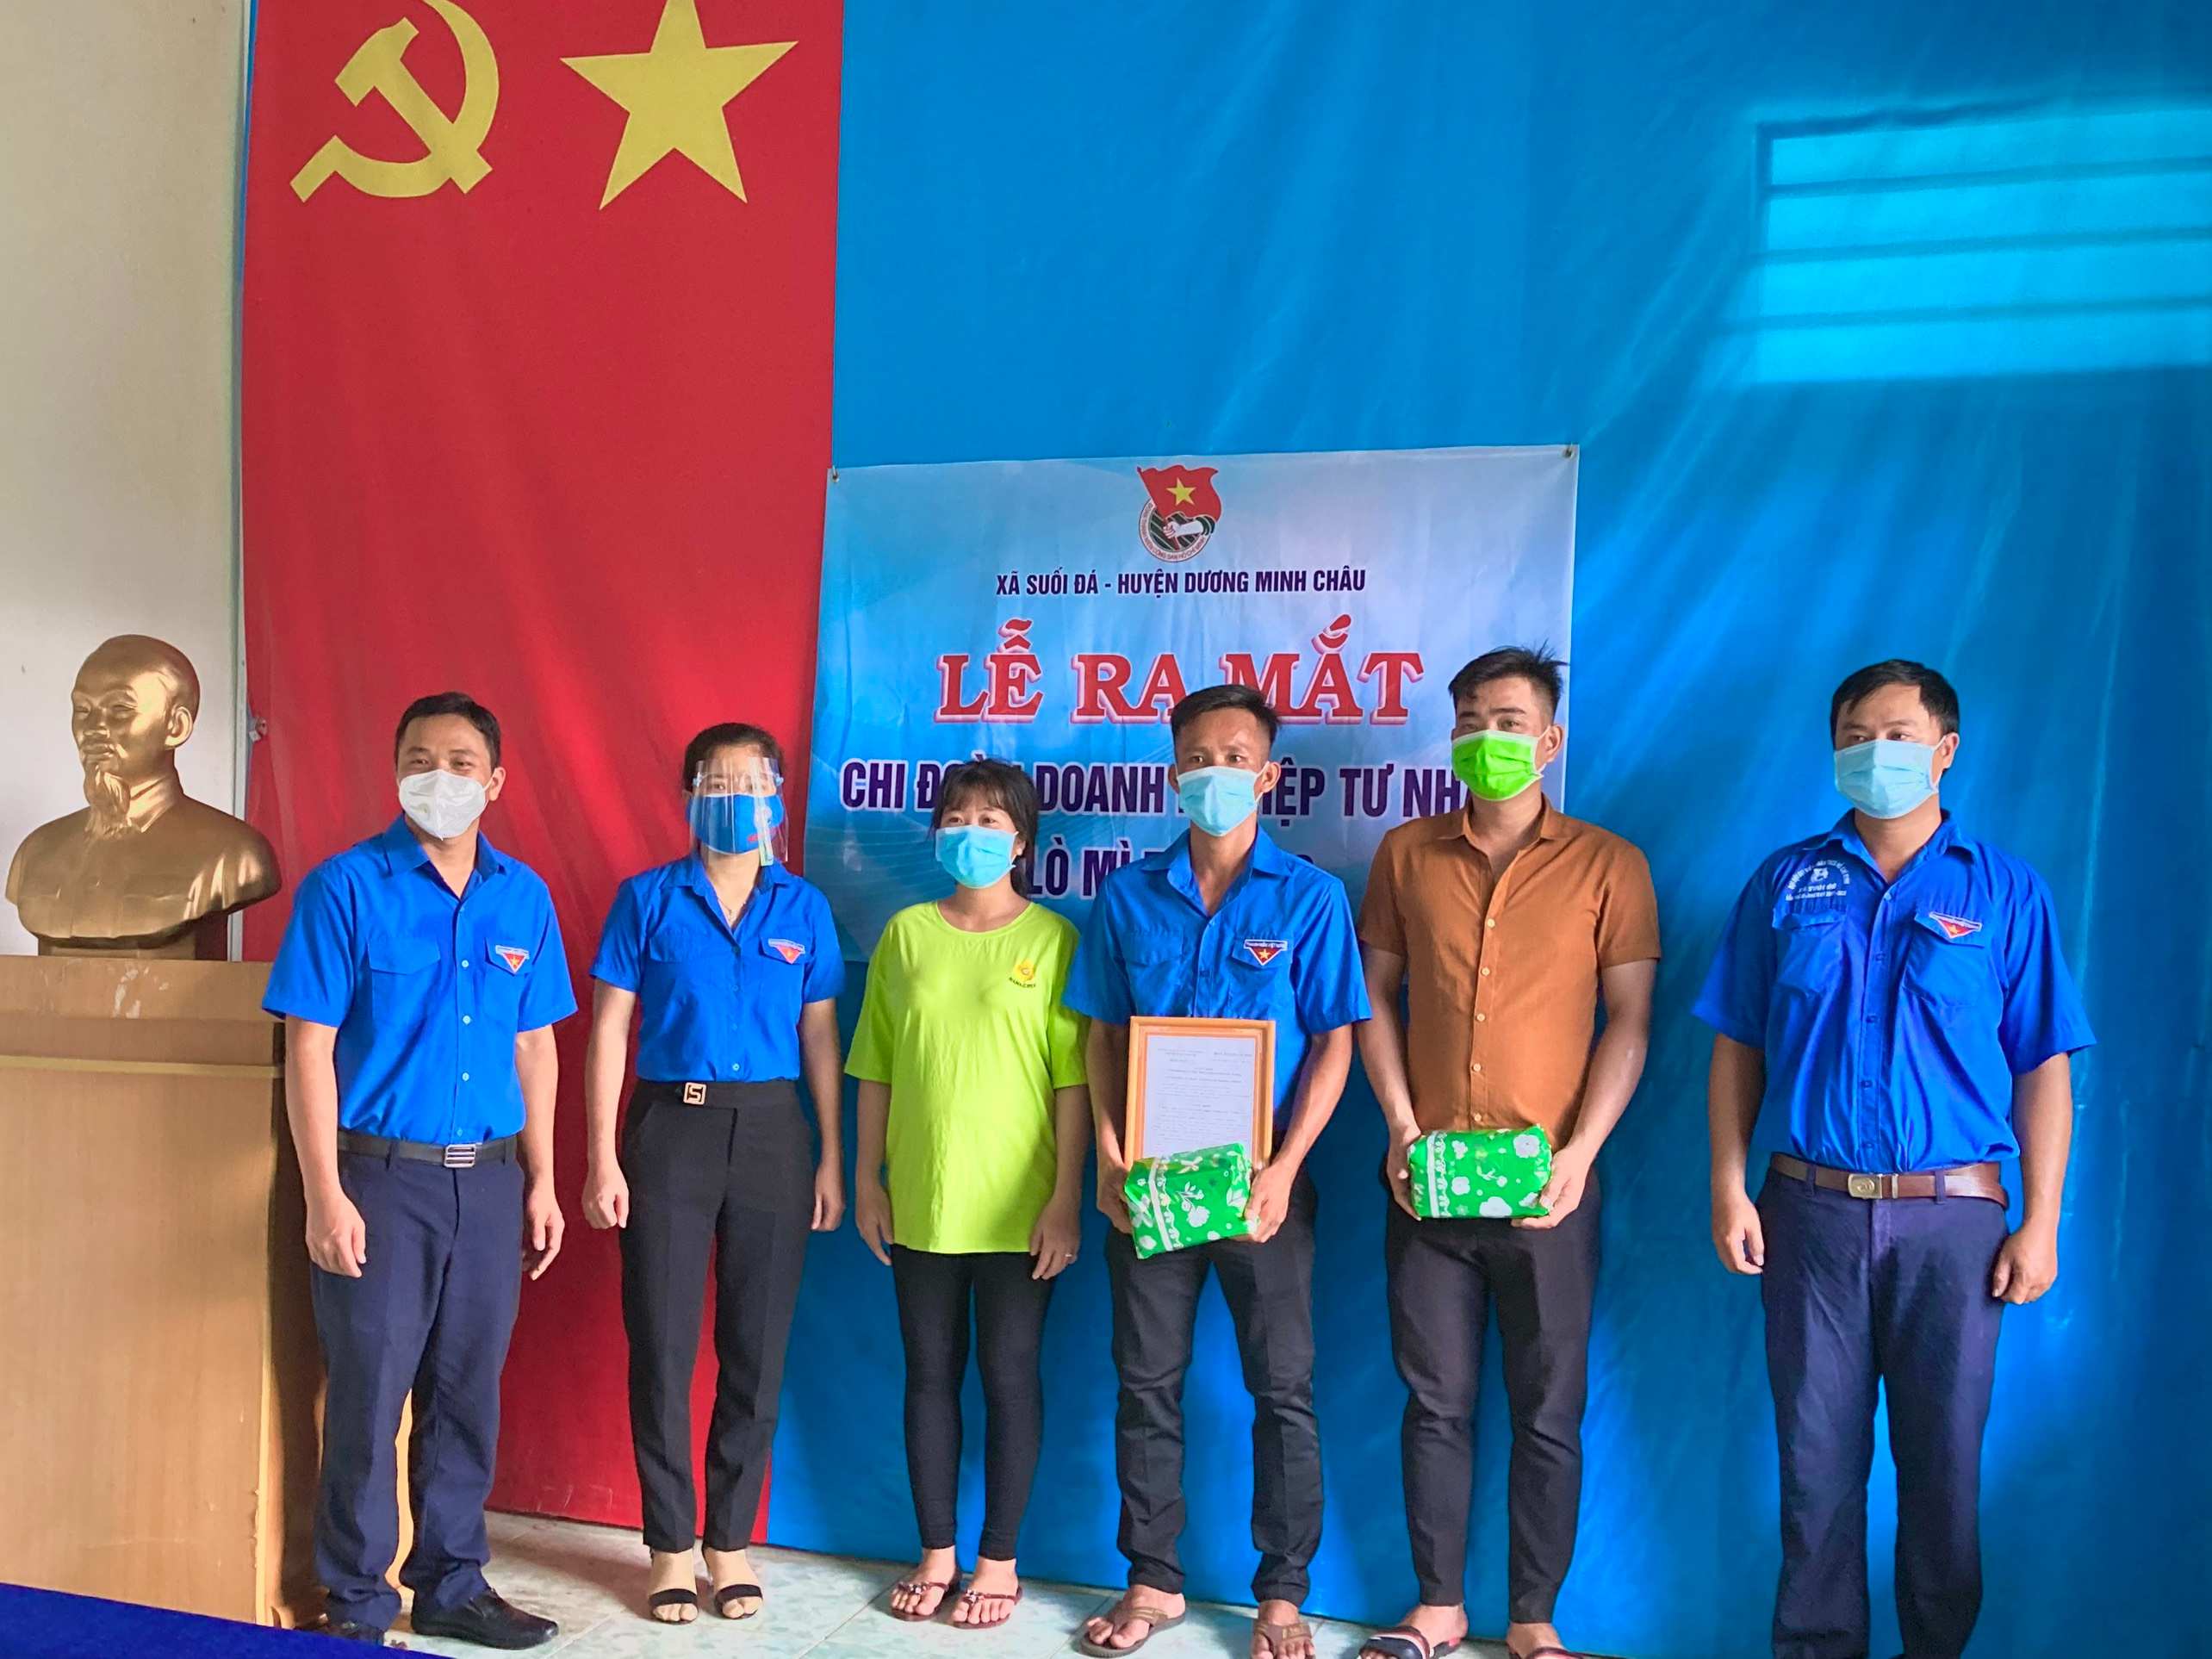 Huyện Dương Minh Châu: Ra mắt Chi đoàn doanh nghiệp tư nhân